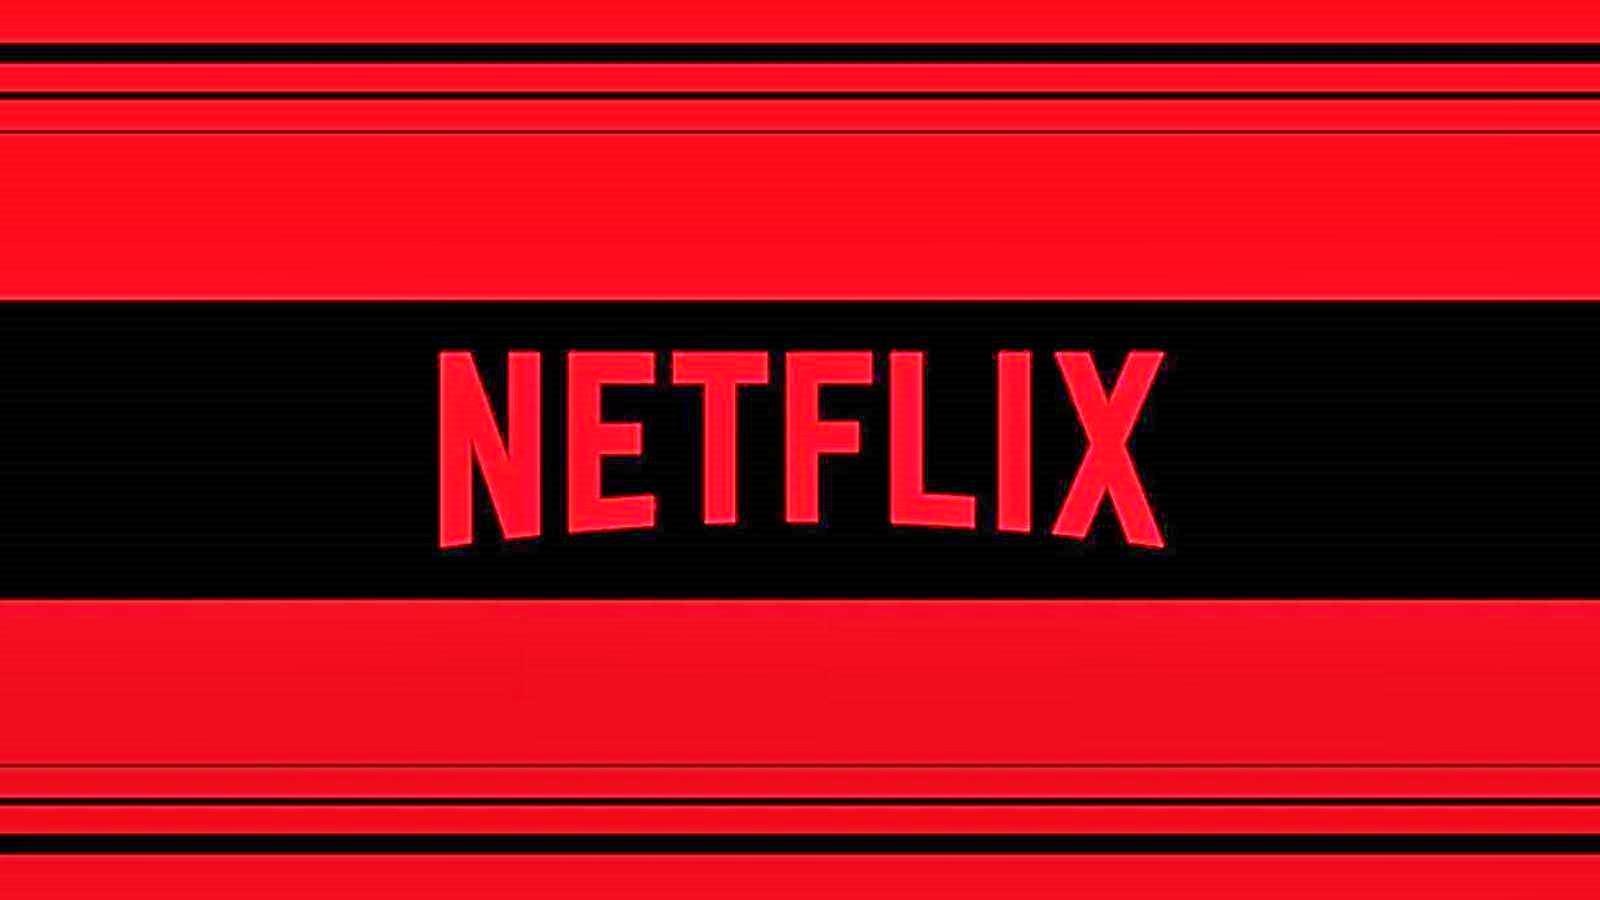 Hotararile Netflix Anuntate OFICIAL IMPACT Multi Clienti